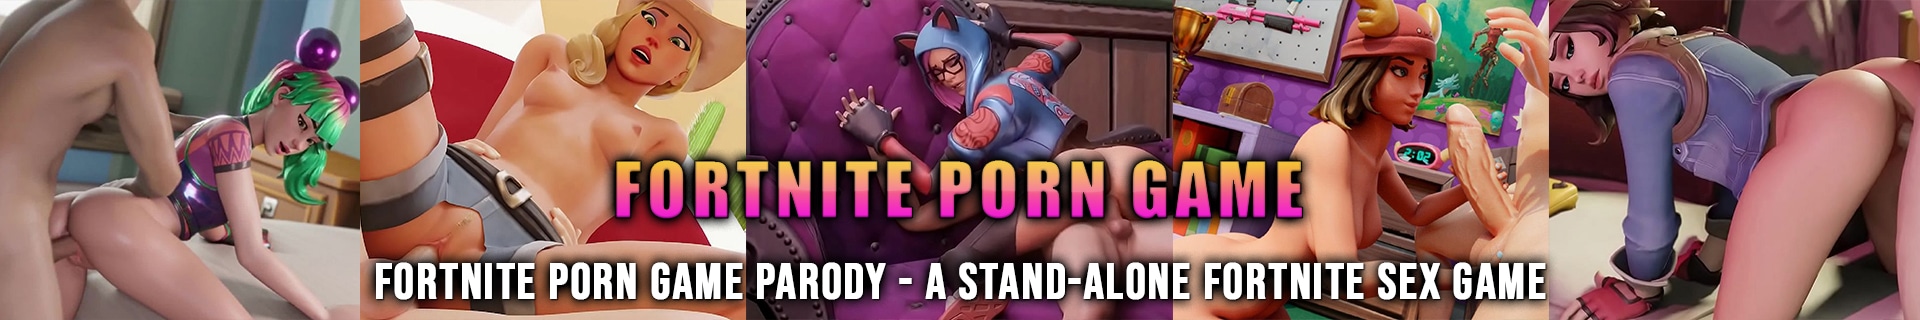 Seks porno fortnite game Fortnite Filmy